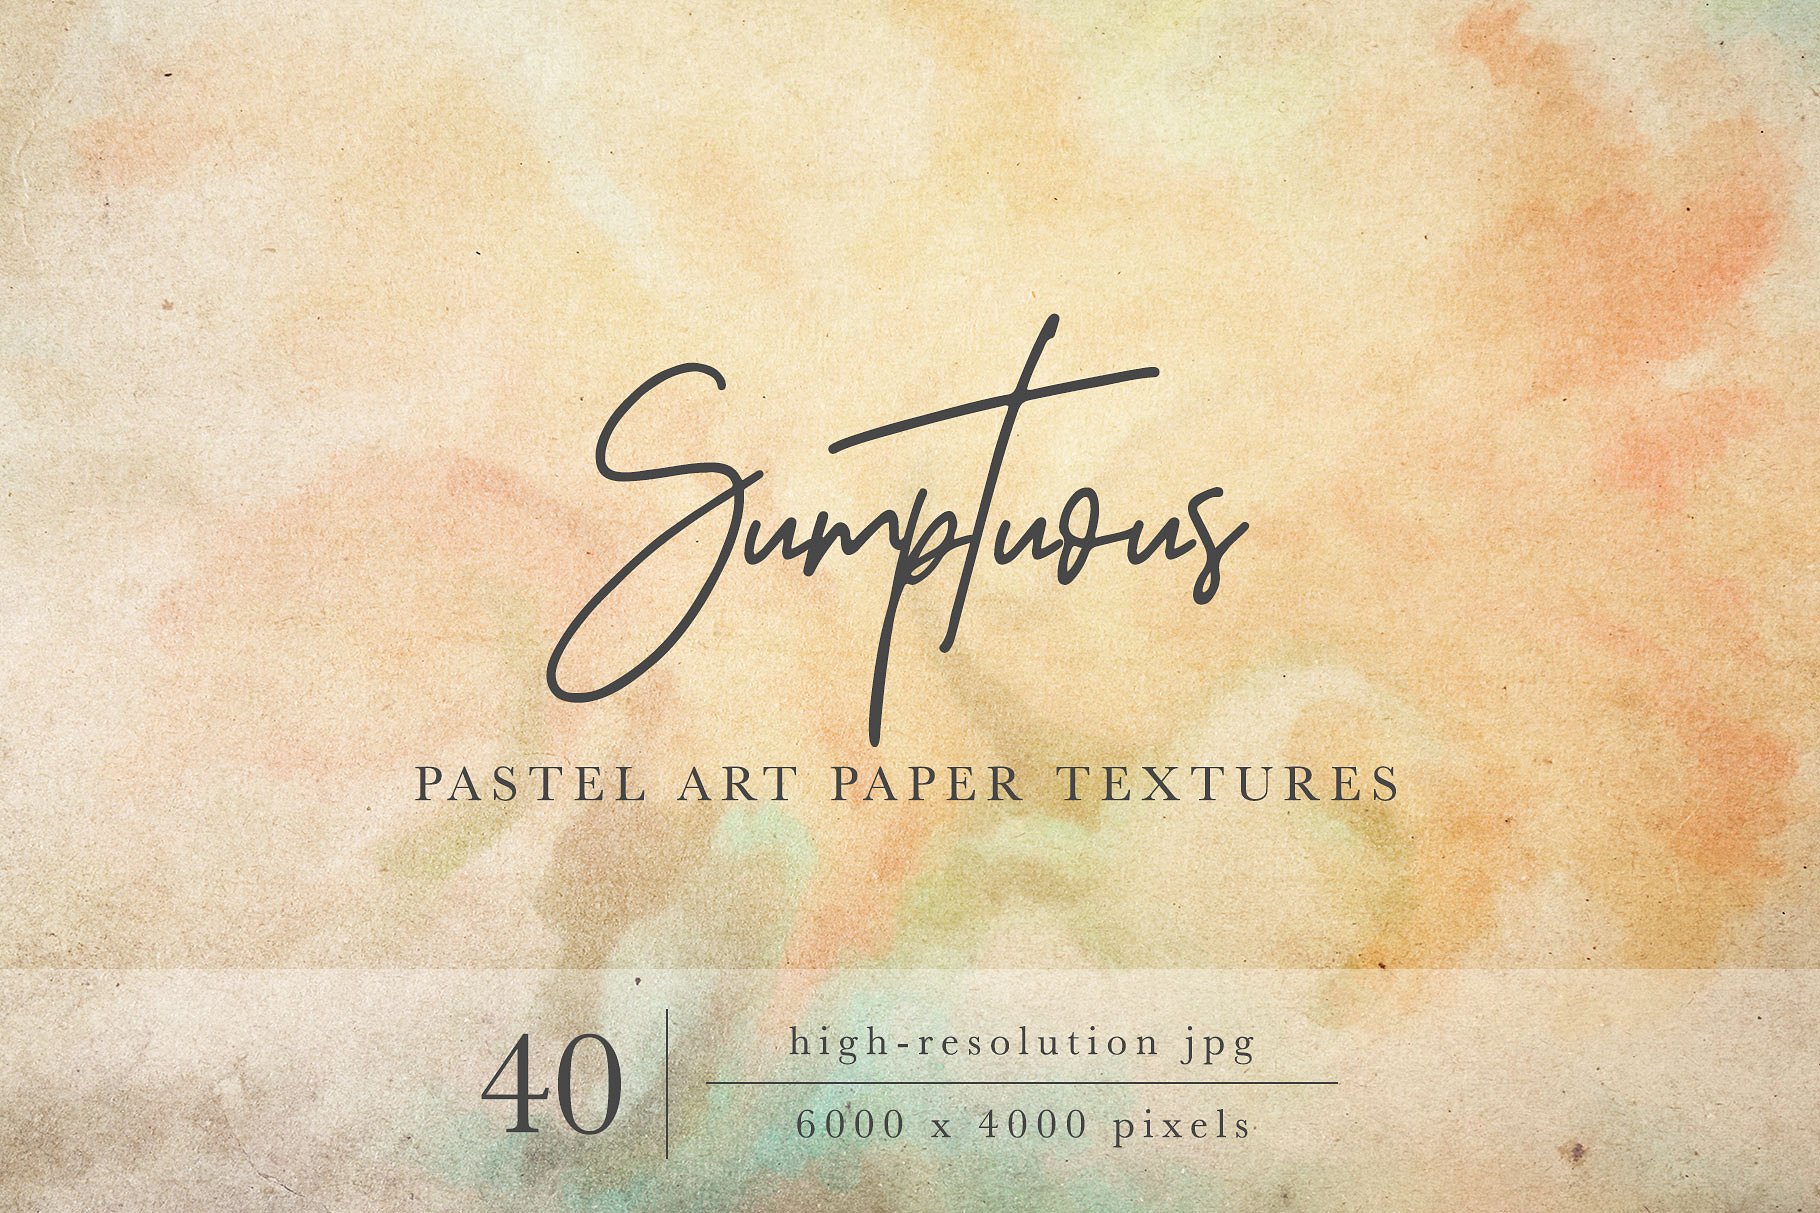 奢华粉画纸纸张纹理 Sumptuous Pastel Paper Textures插图1